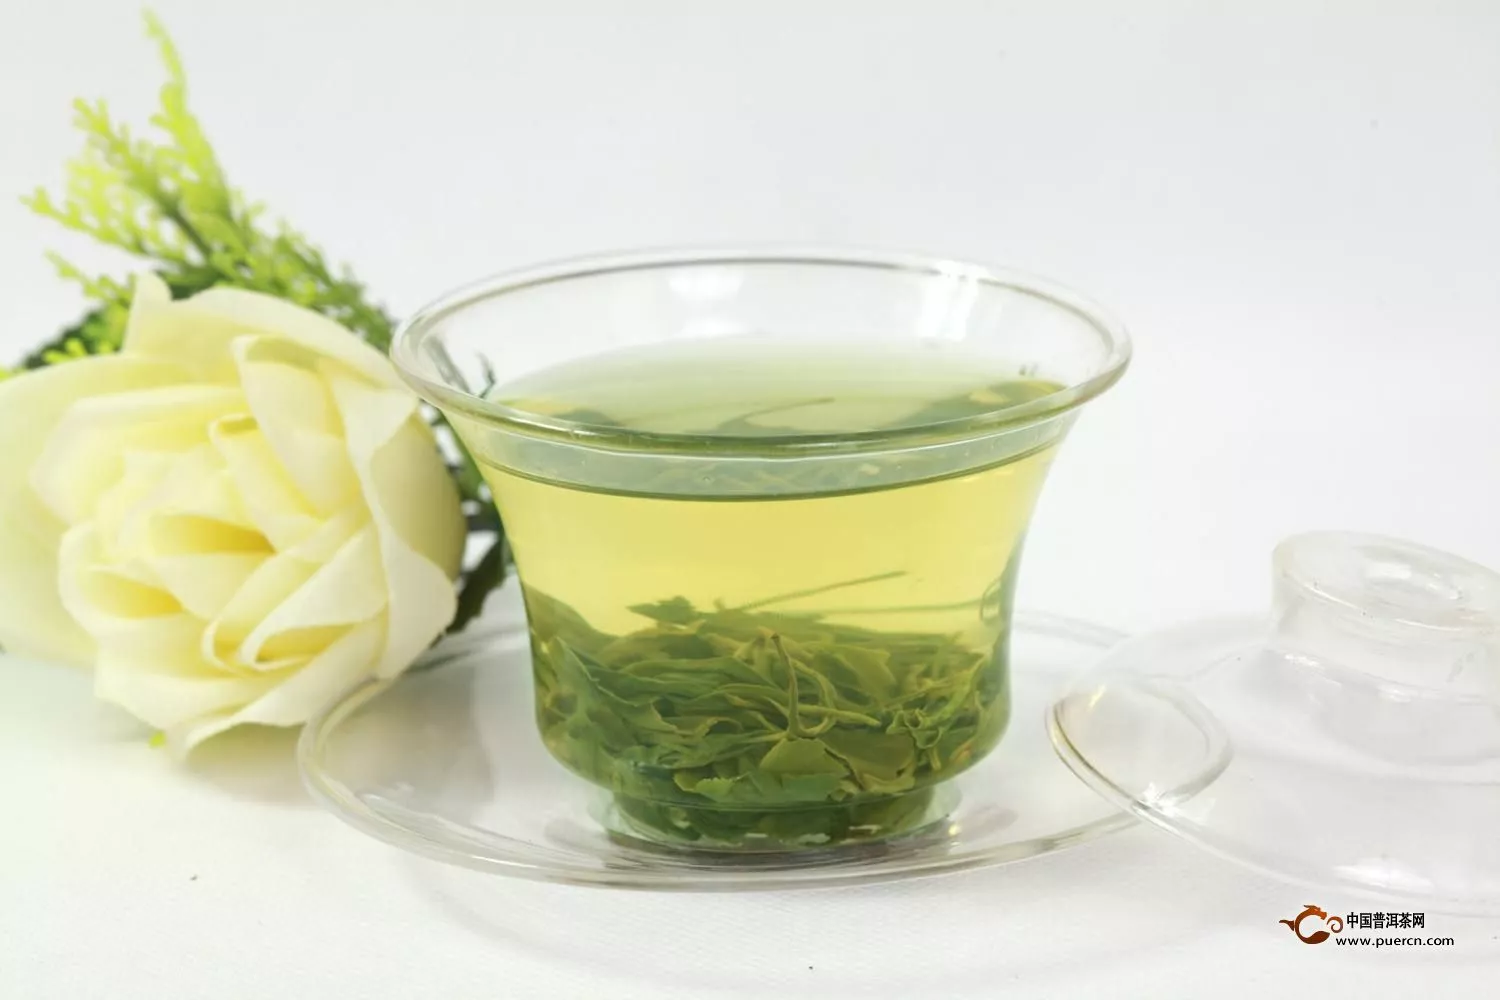 洗茶会对绿茶造成什么样的影响呢?